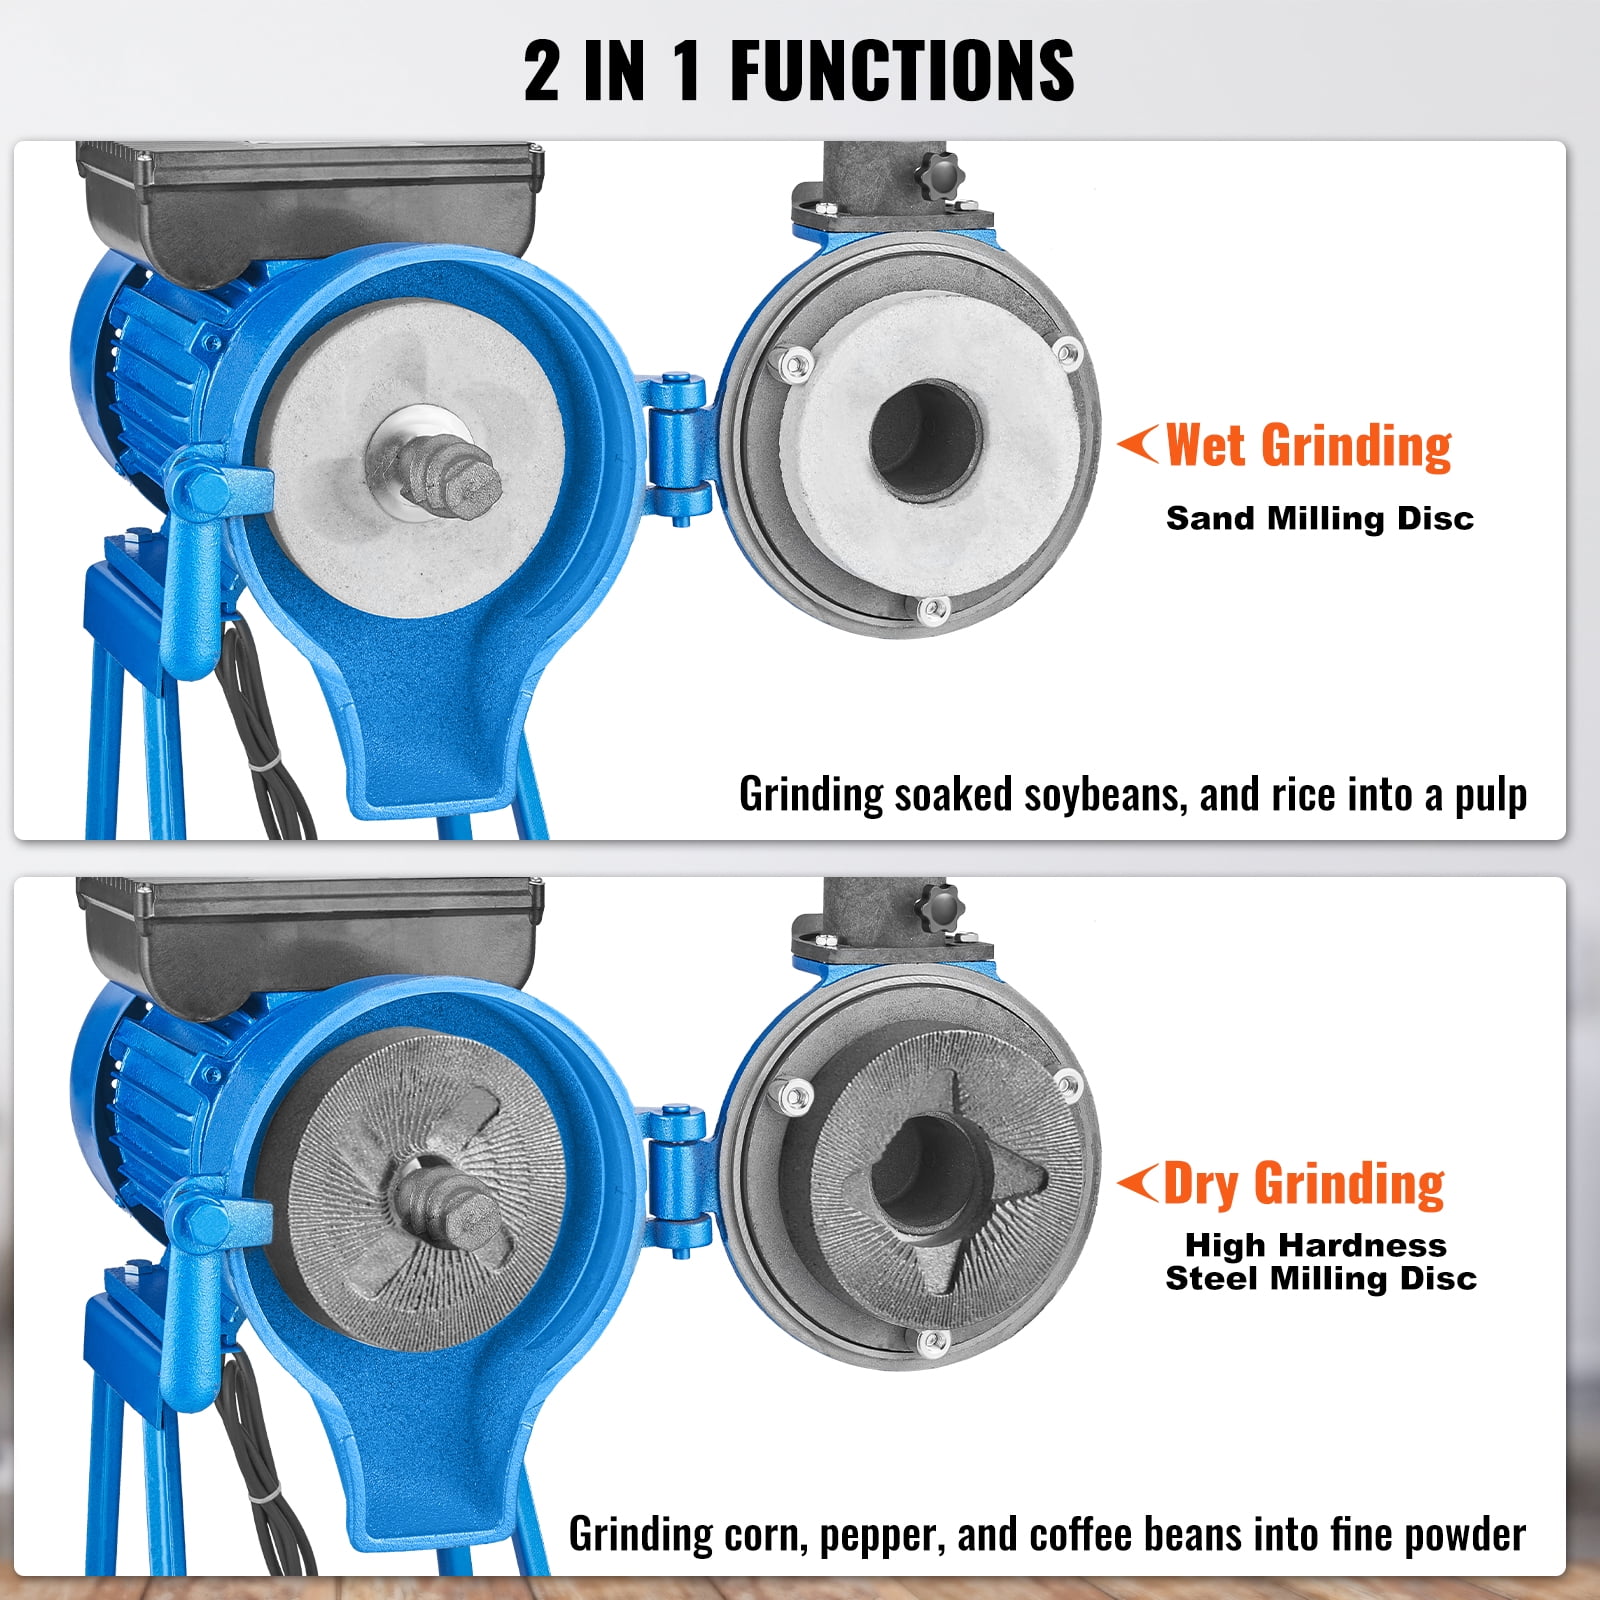 JOYDING 110V Electric Mill Grinder Machine Wet Grinder for Grinder